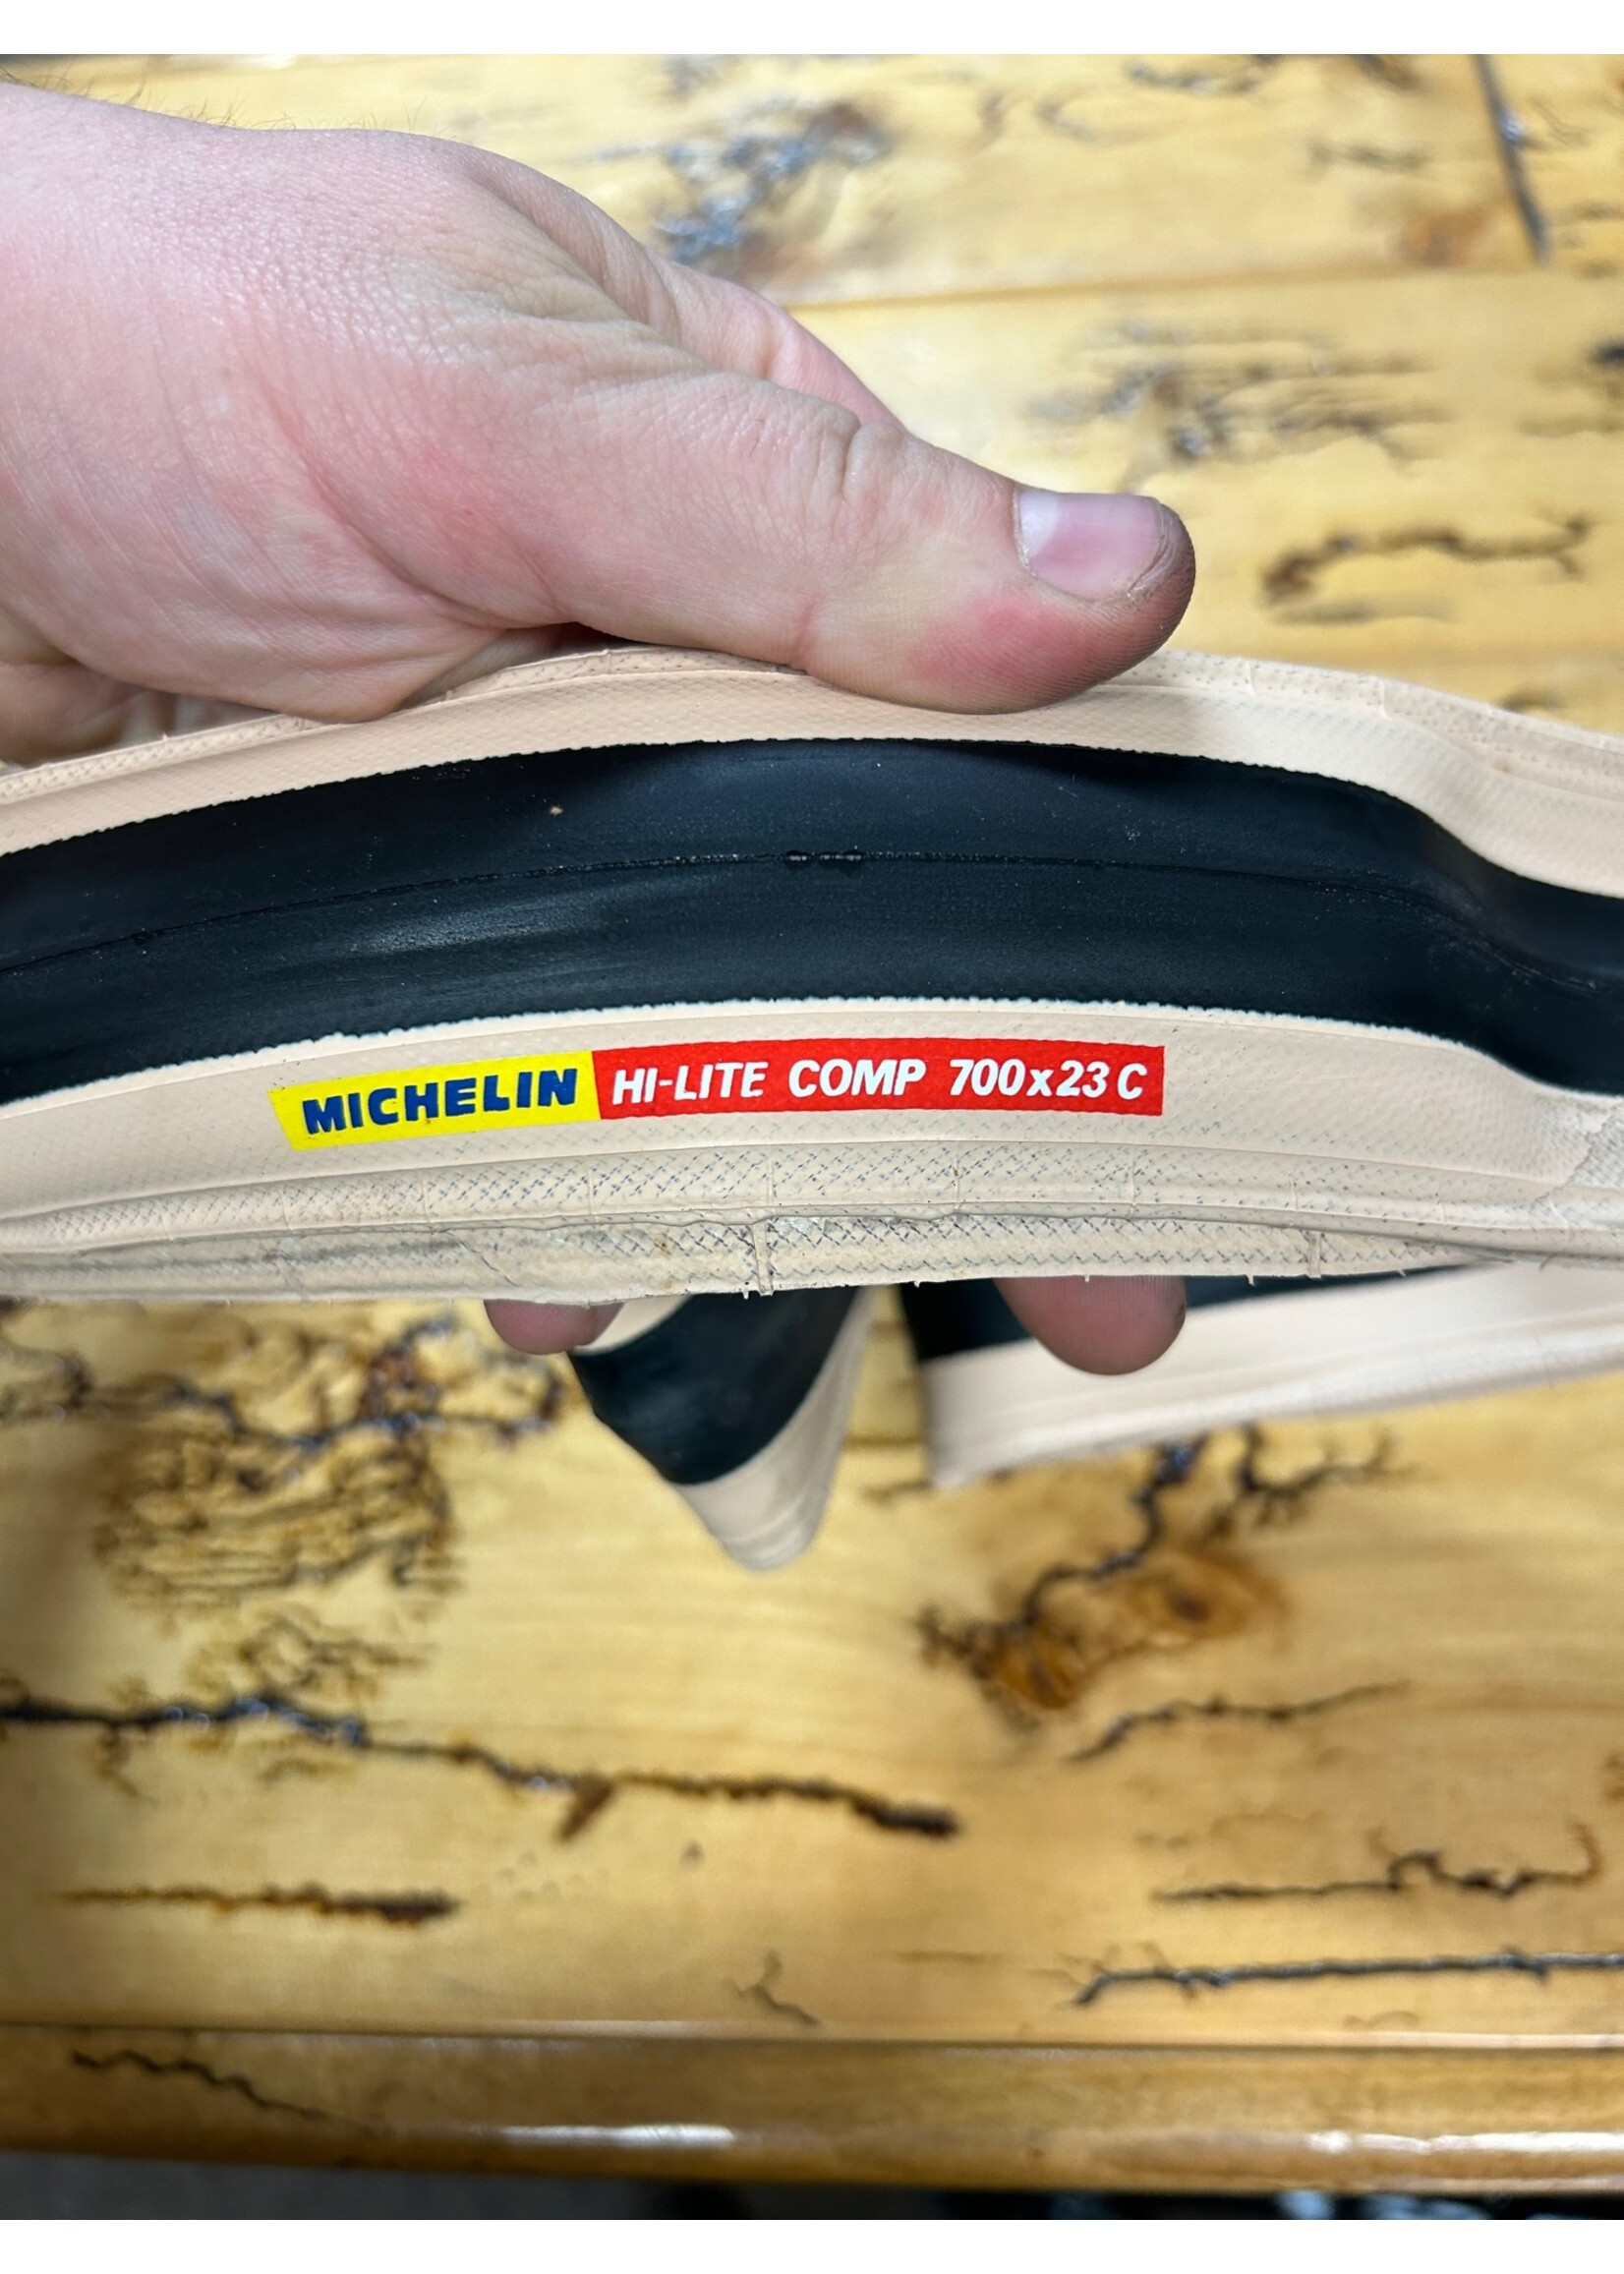 Michelin Michelin Hi Lite Comp 700x23 Tire